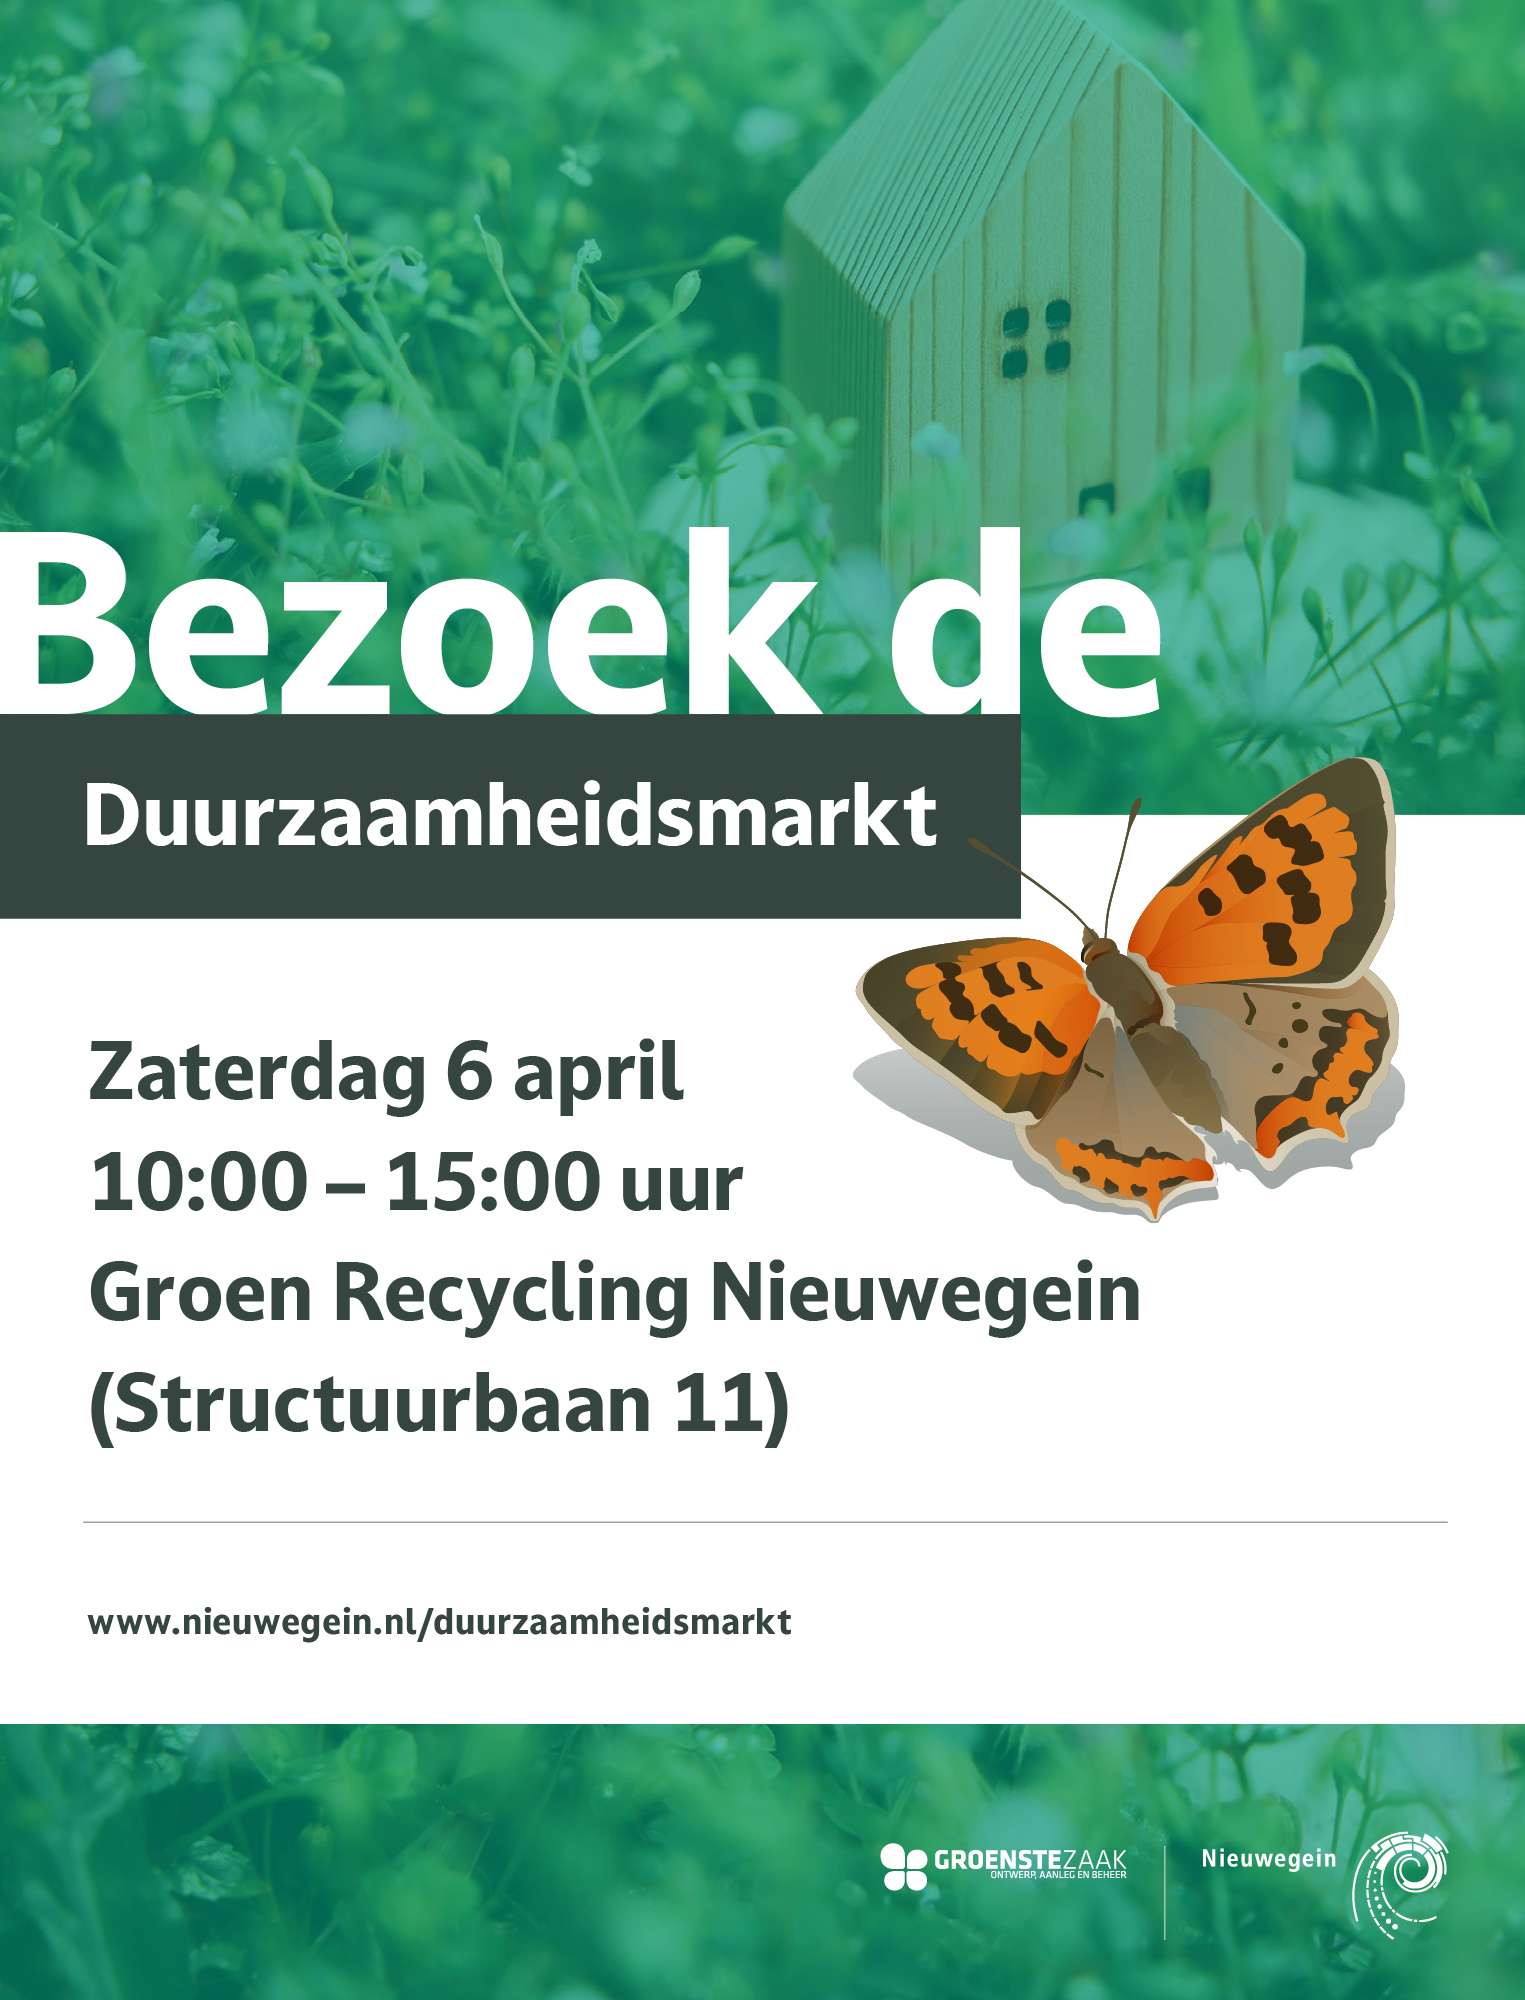 https://www.nieuwegeinsewijken.nl/batau-zuid/upload/afbeeldingen/duurzaamheidsmarkt-flyer.jpg